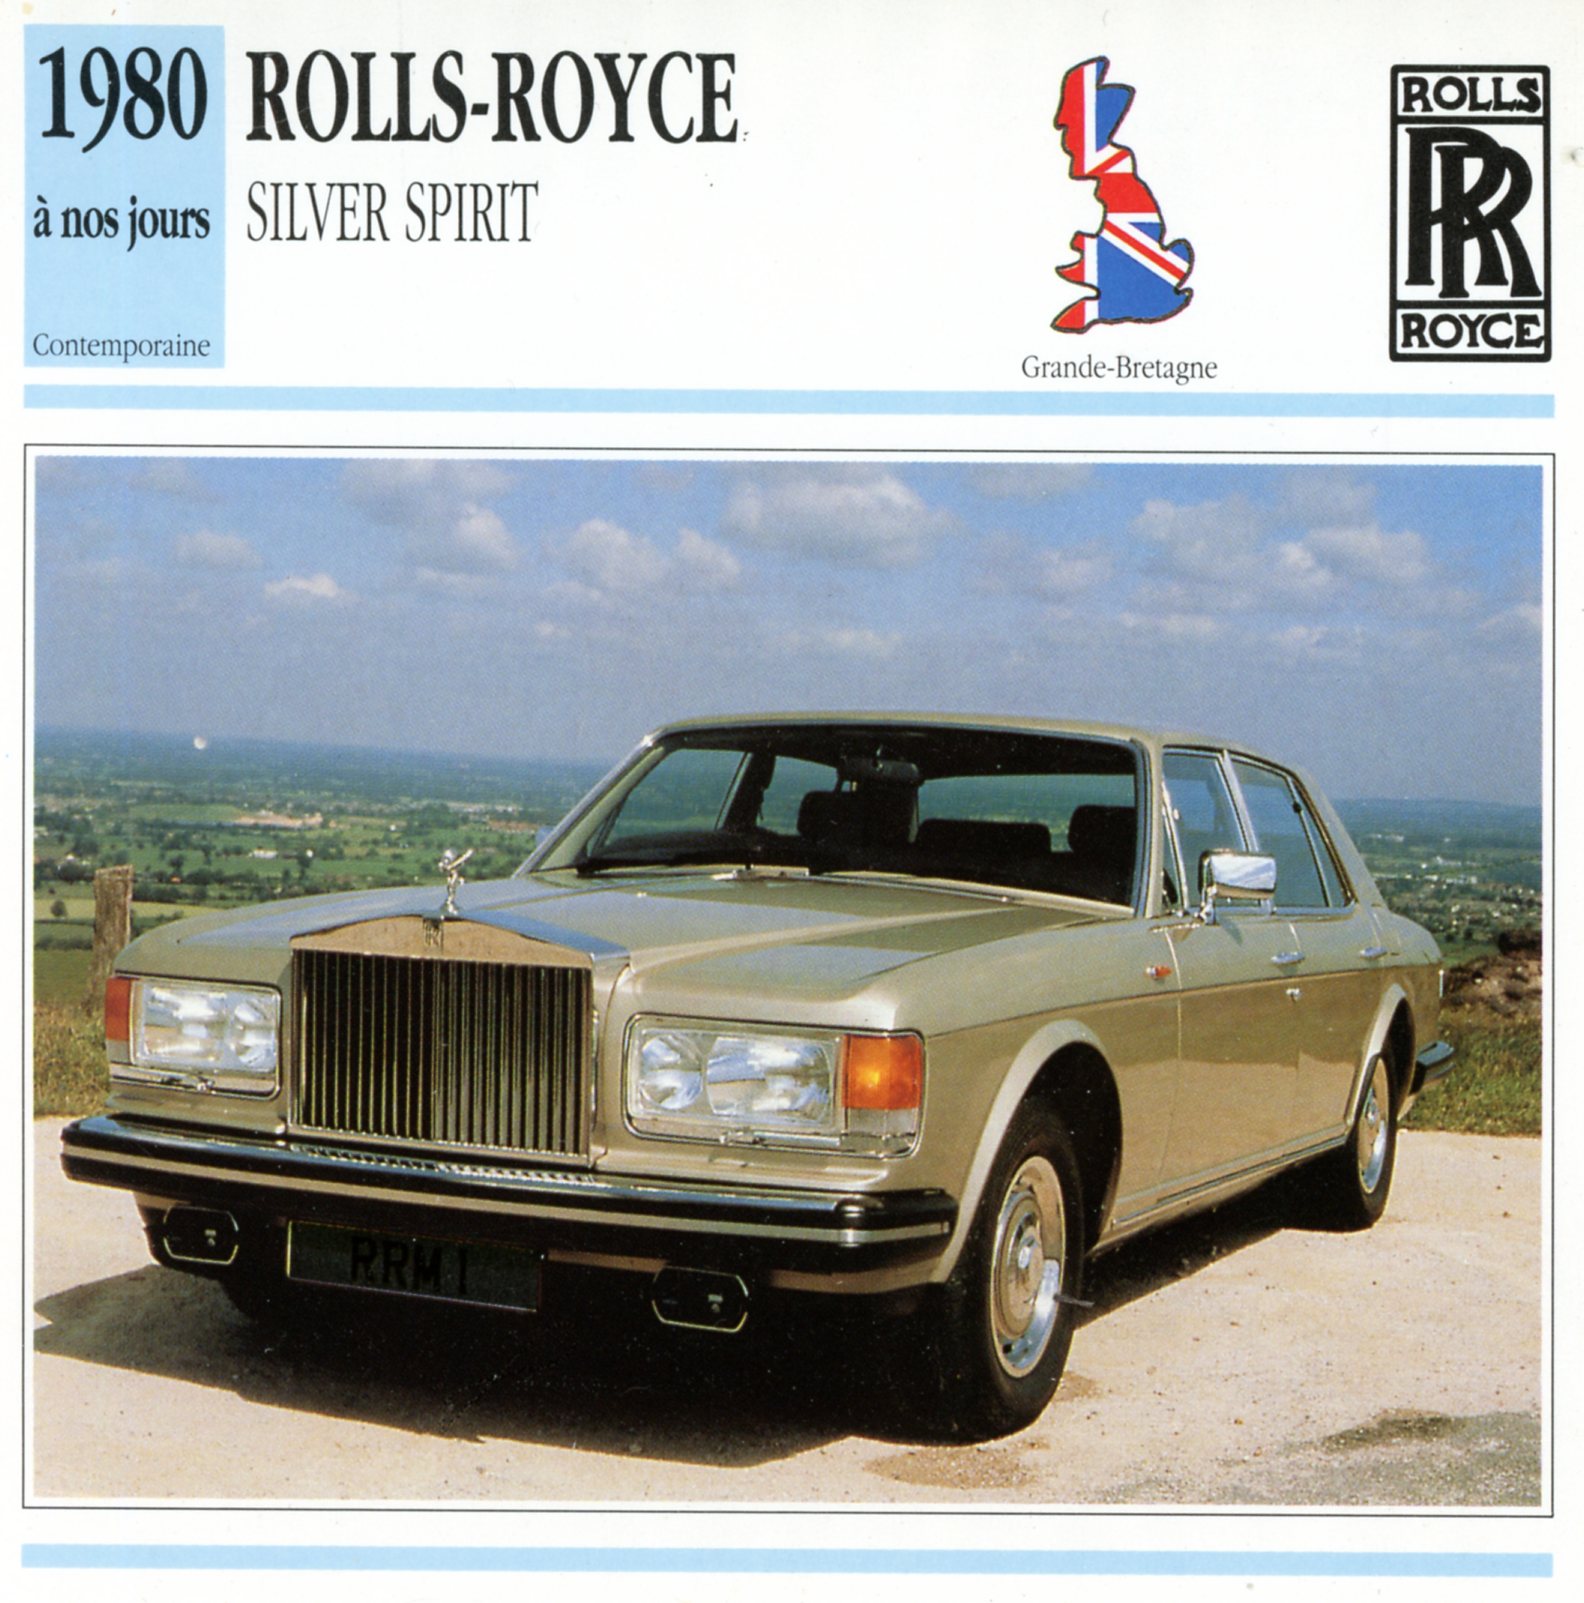 ROLLS-ROYCE SILVER SPIRIT 1980 - FICHE AUTO CARACTÉRISTIQUES